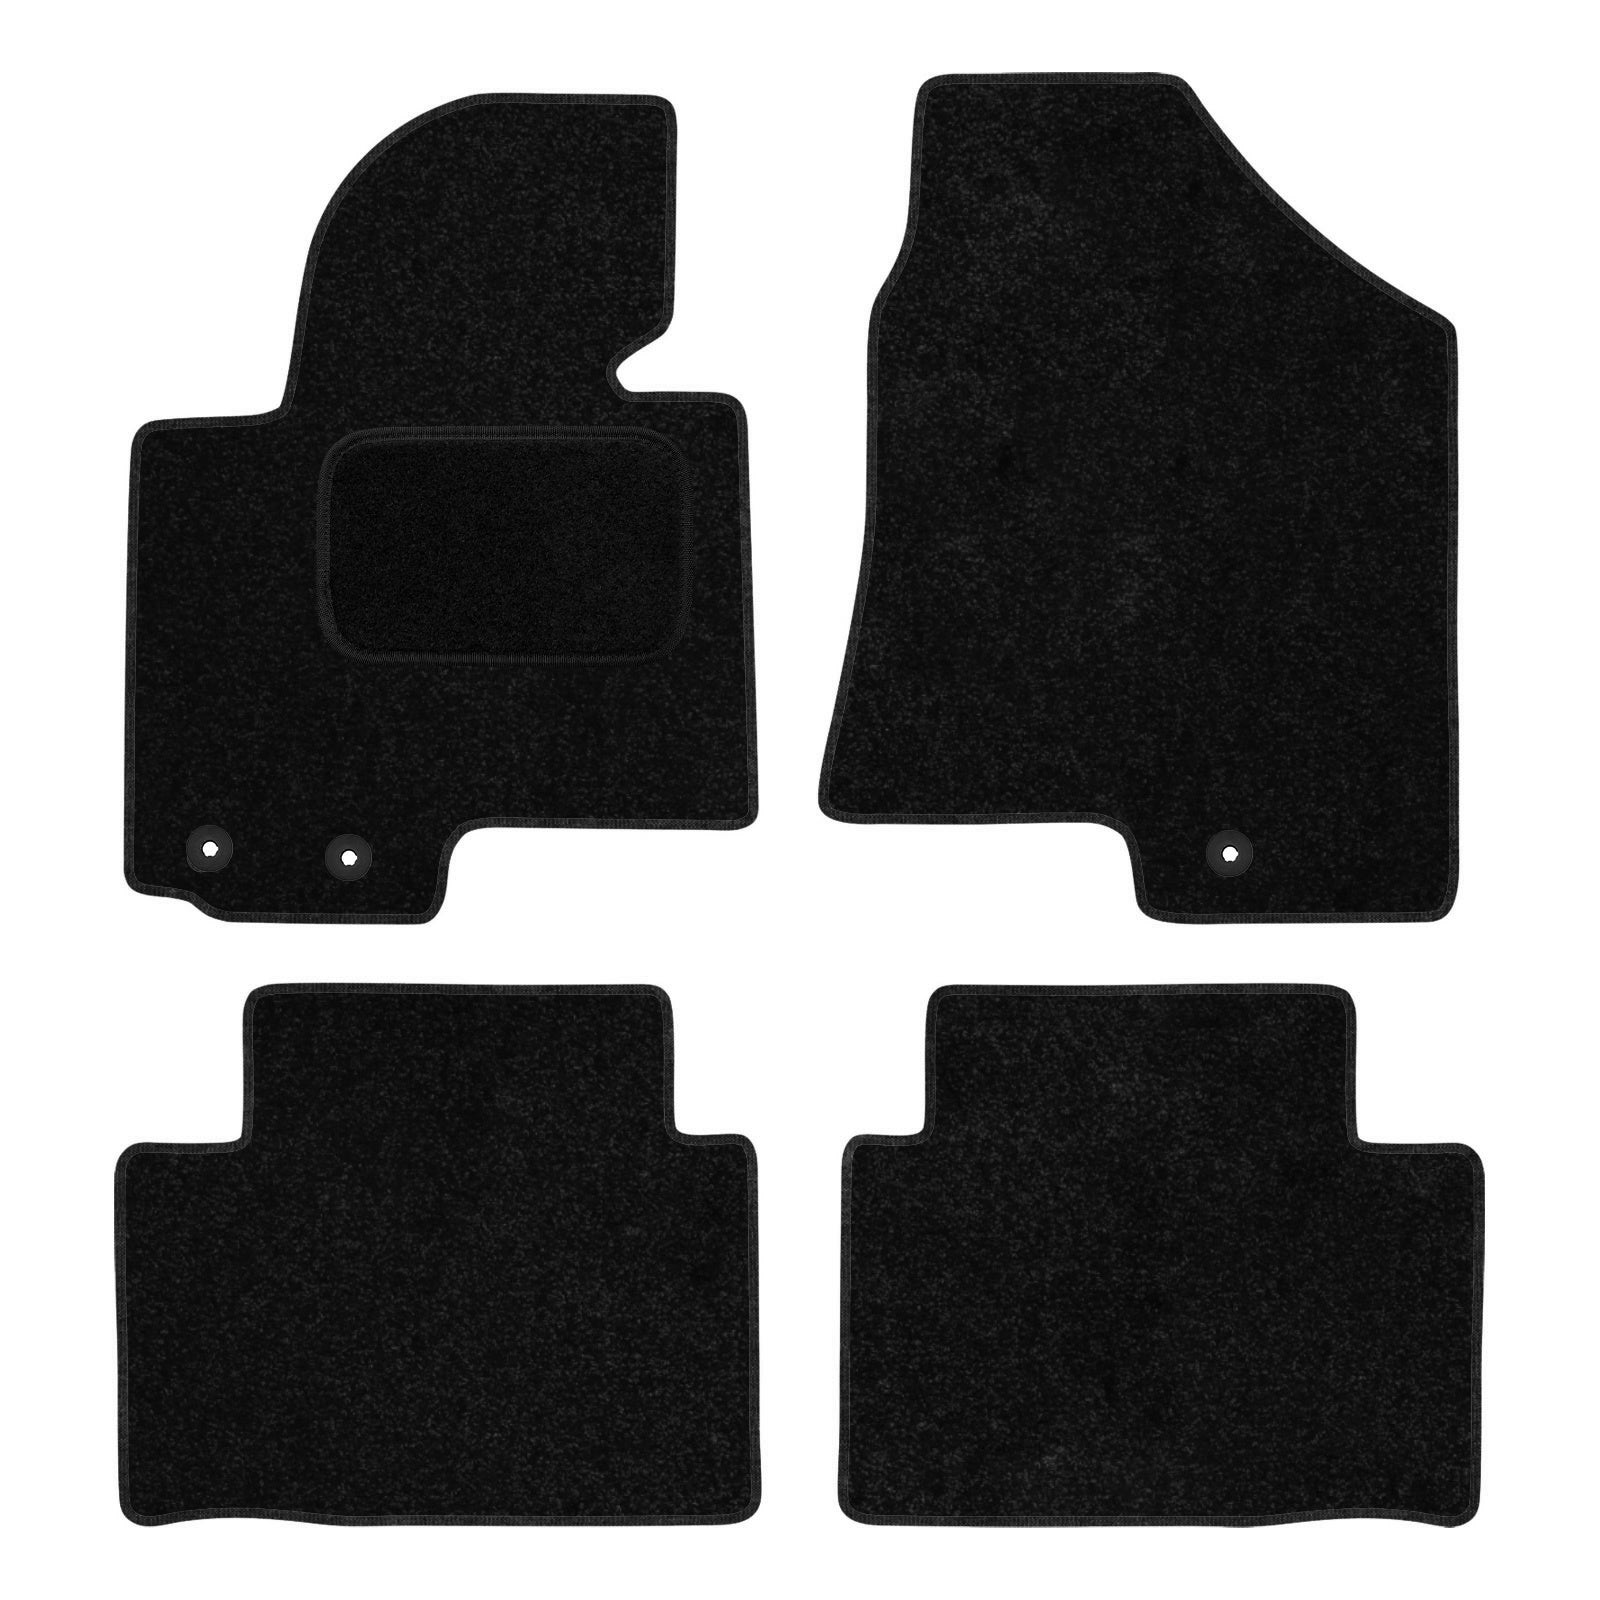 2015 - für Fußmatten – Set Hyundai AGCP 2009 Passform Autoteppiche ix35